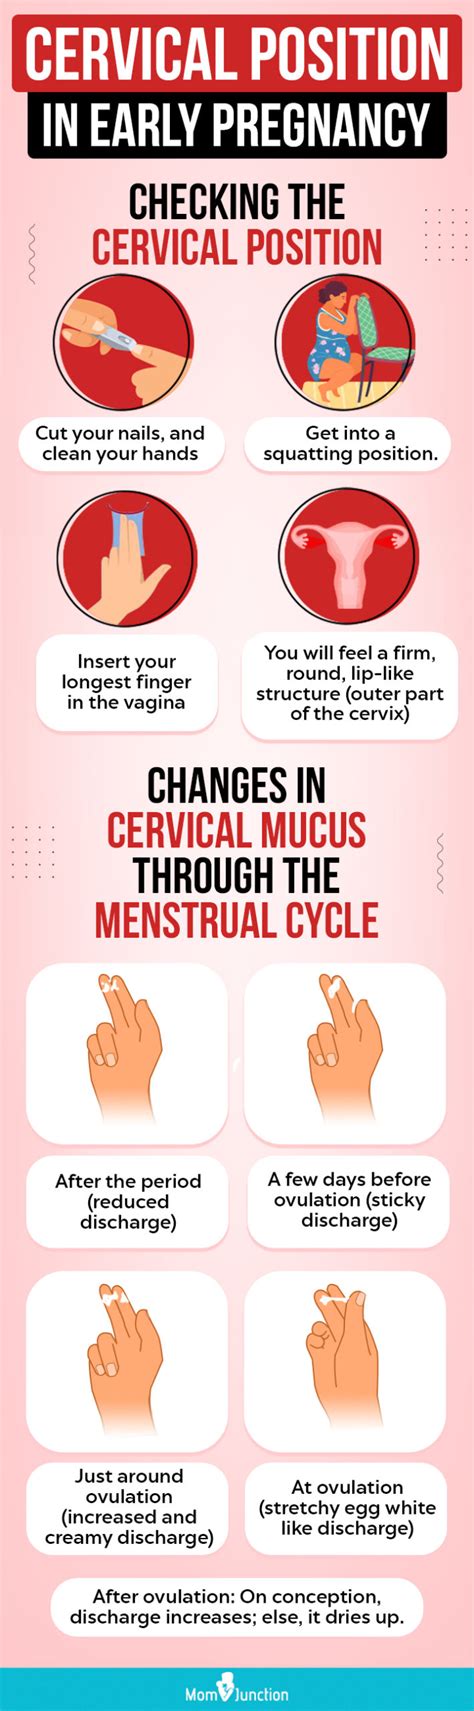 How To Check Cervical Position Religionisland Doralutz